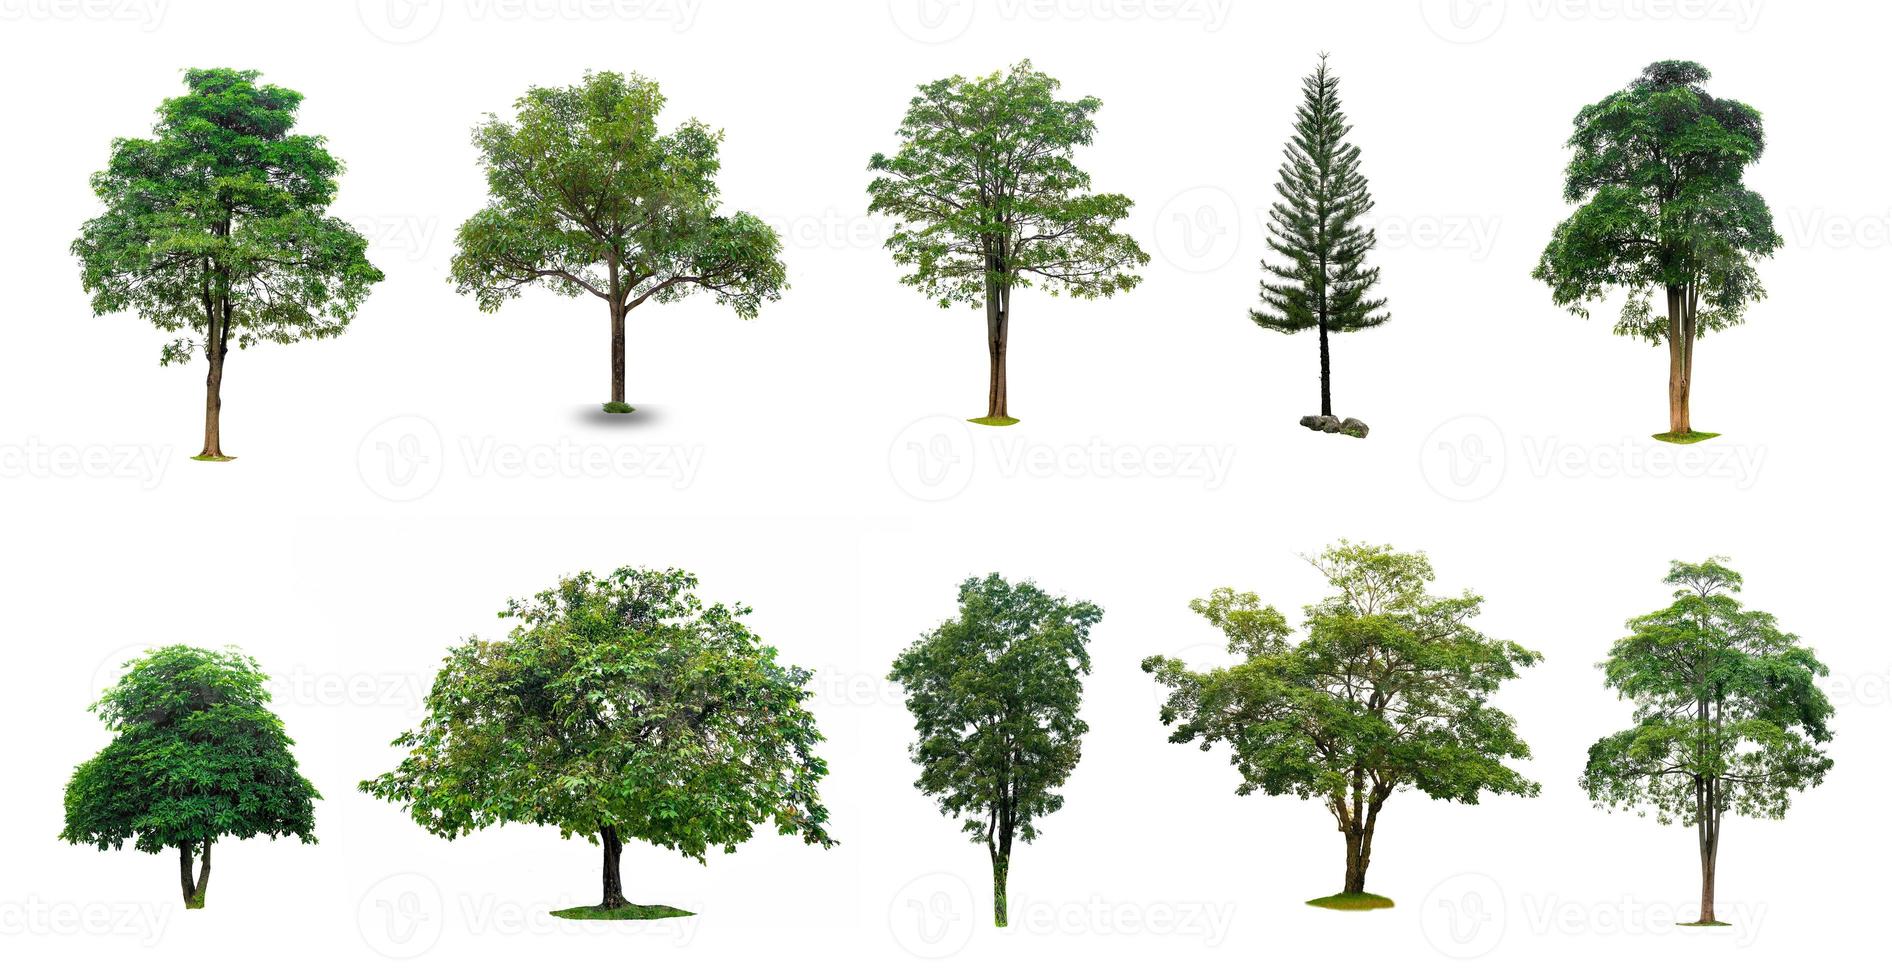 isolerade träd på vit bakgrund samling av isolerade träd på vit bakgrund lämplig för användning i arkitektonisk design, dekorationsarbete foto